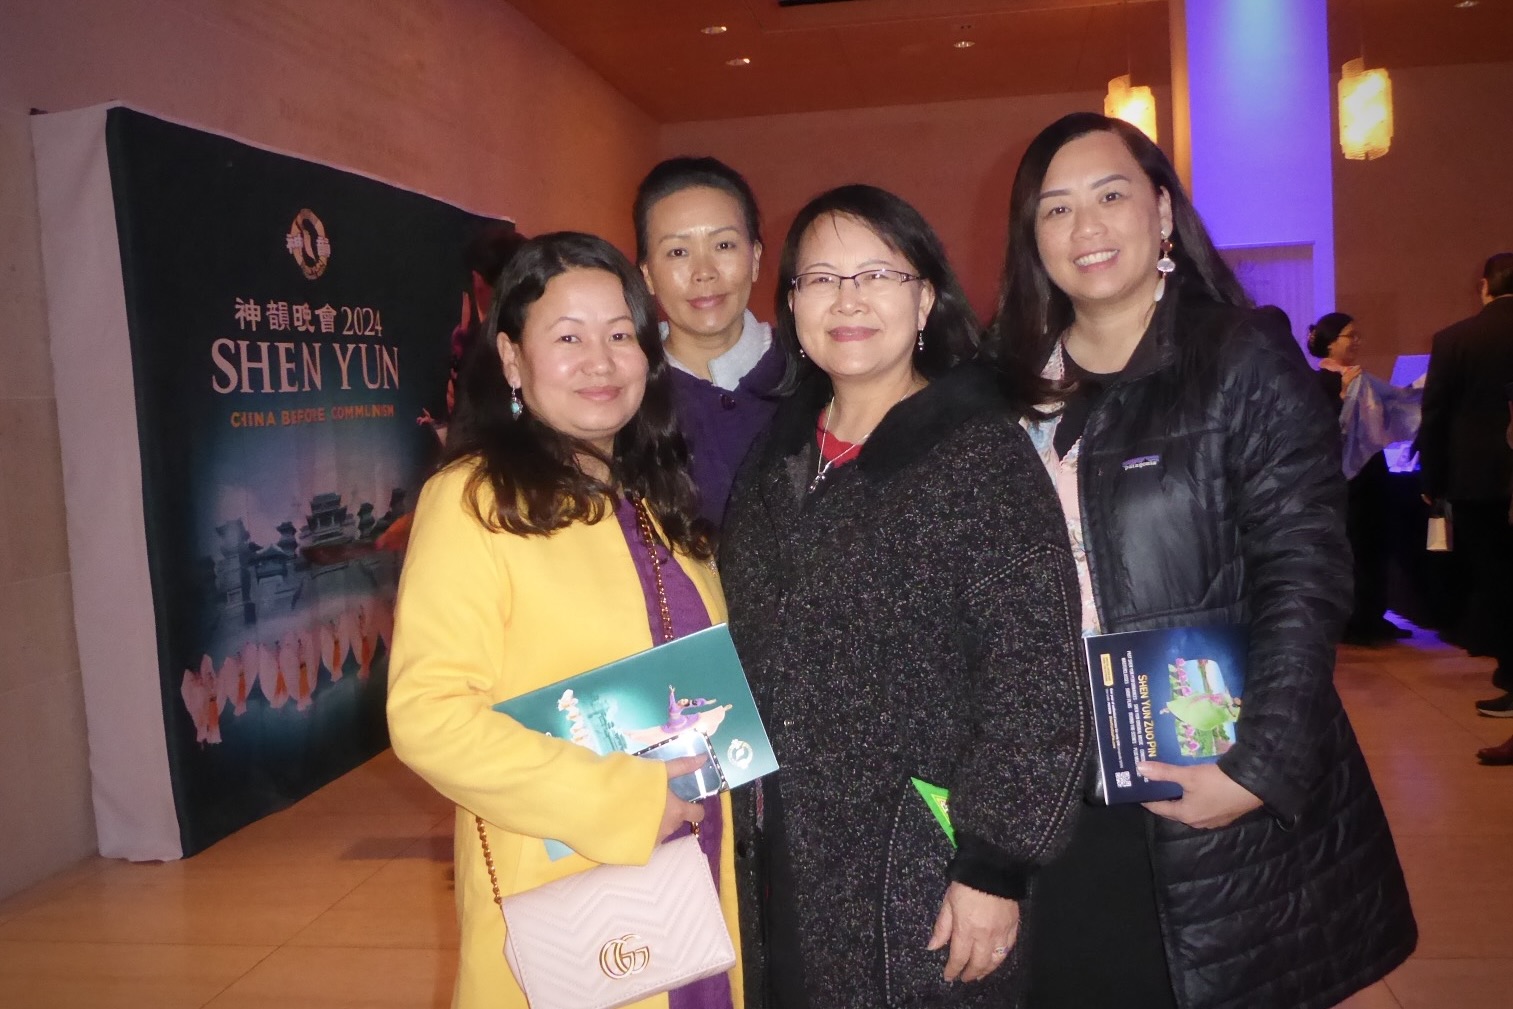 Giám đốc điều hành đưa nhóm cộng sự đến thưởng lãm Shen Yun lần thứ 4